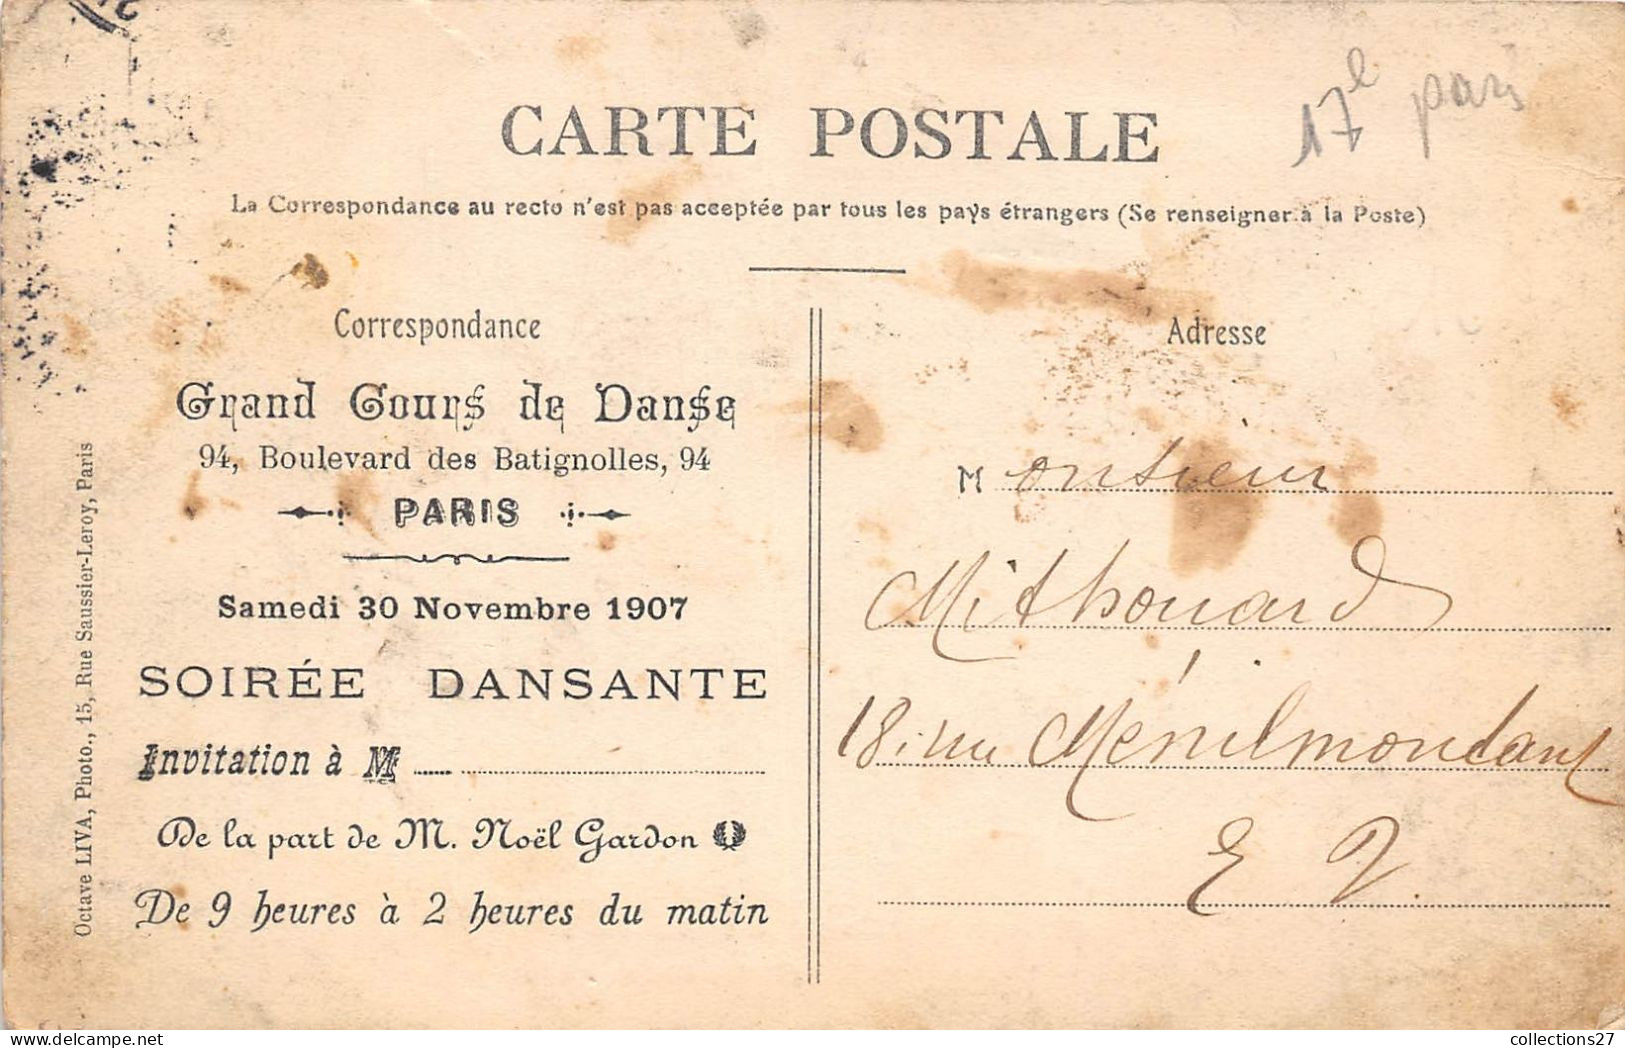 PARIS-75017- 94 BOULEVARD DES BATIGNOLLES- DANSES NOUVELLES - DEMONSTRATION- GRAND COUR DE DANSE - Paris (17)